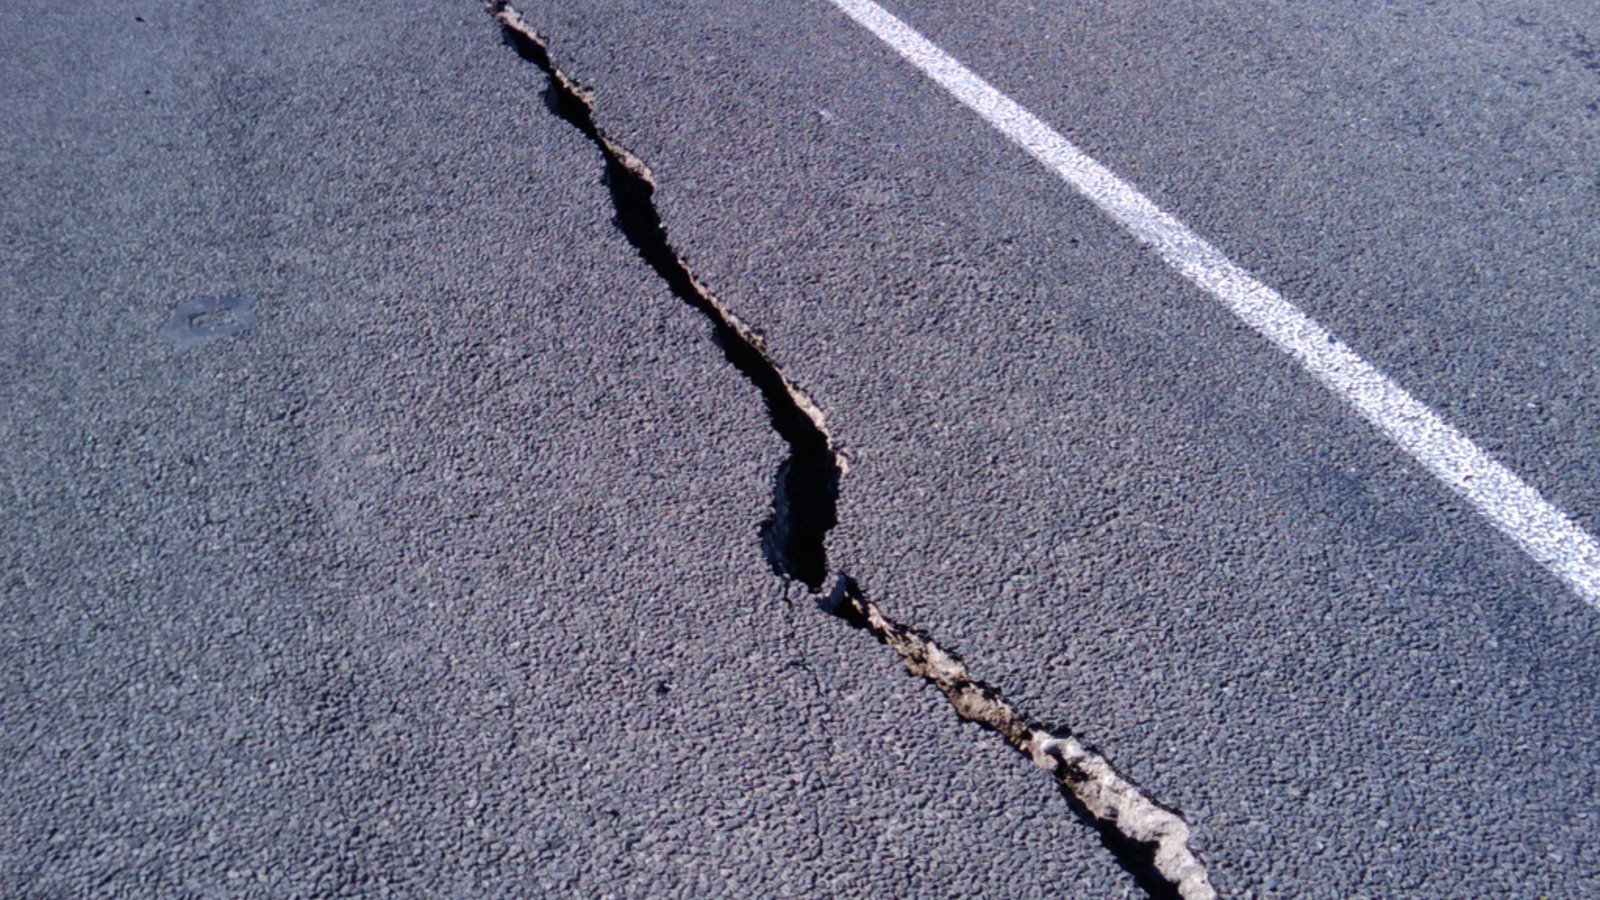 Tremblement De Terre De 4 5 Dans La Region De Montreal Agence Science Presse